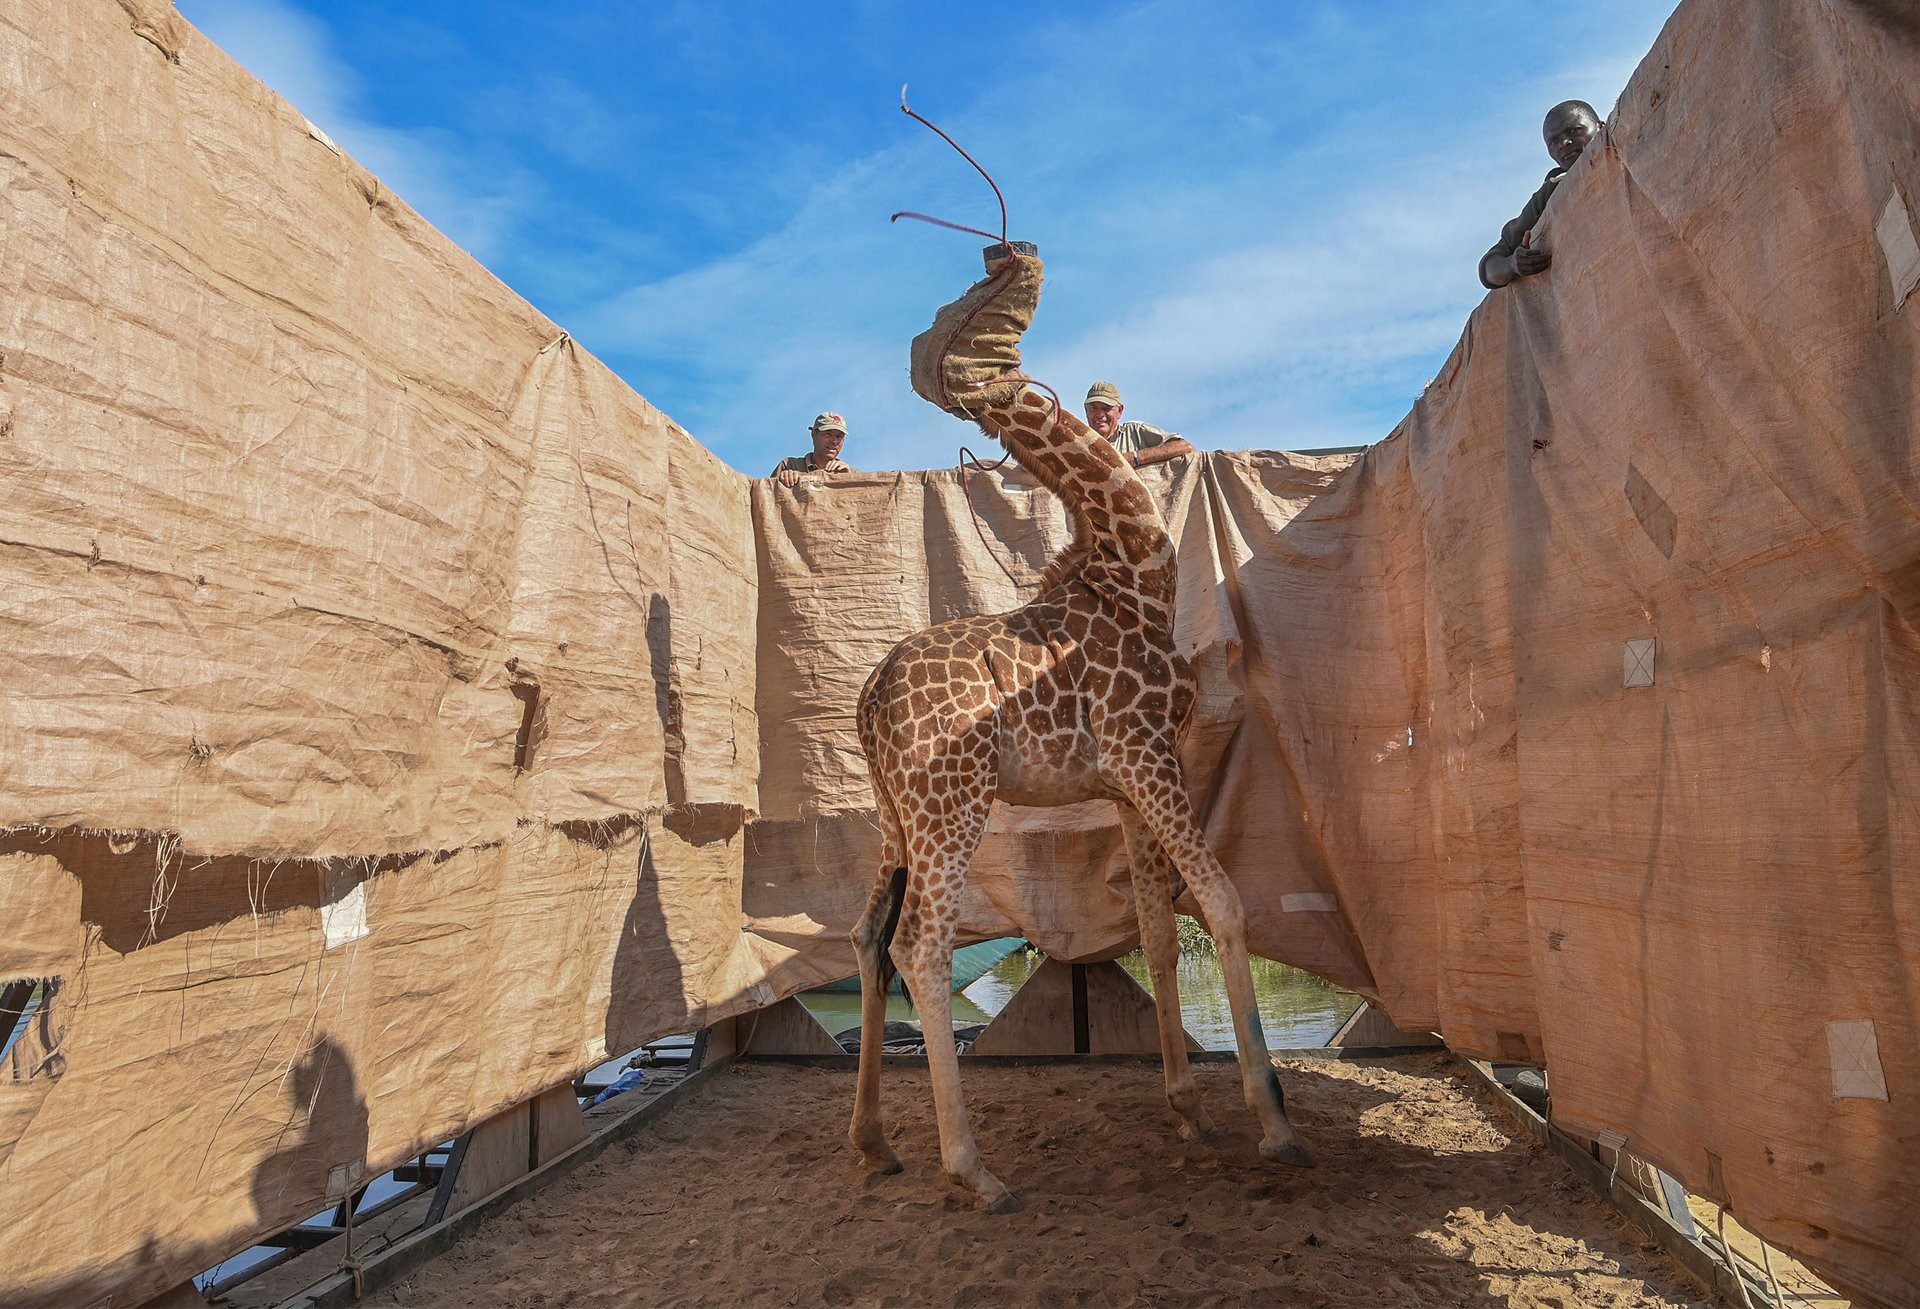 1 место в категории Природа, 2021. Жирафа перевозят с затопленного острова в безопасное место на специально построенной барже, озеро Баринго, Кения, 3 декабря 2020 года. Автор Ами Витале